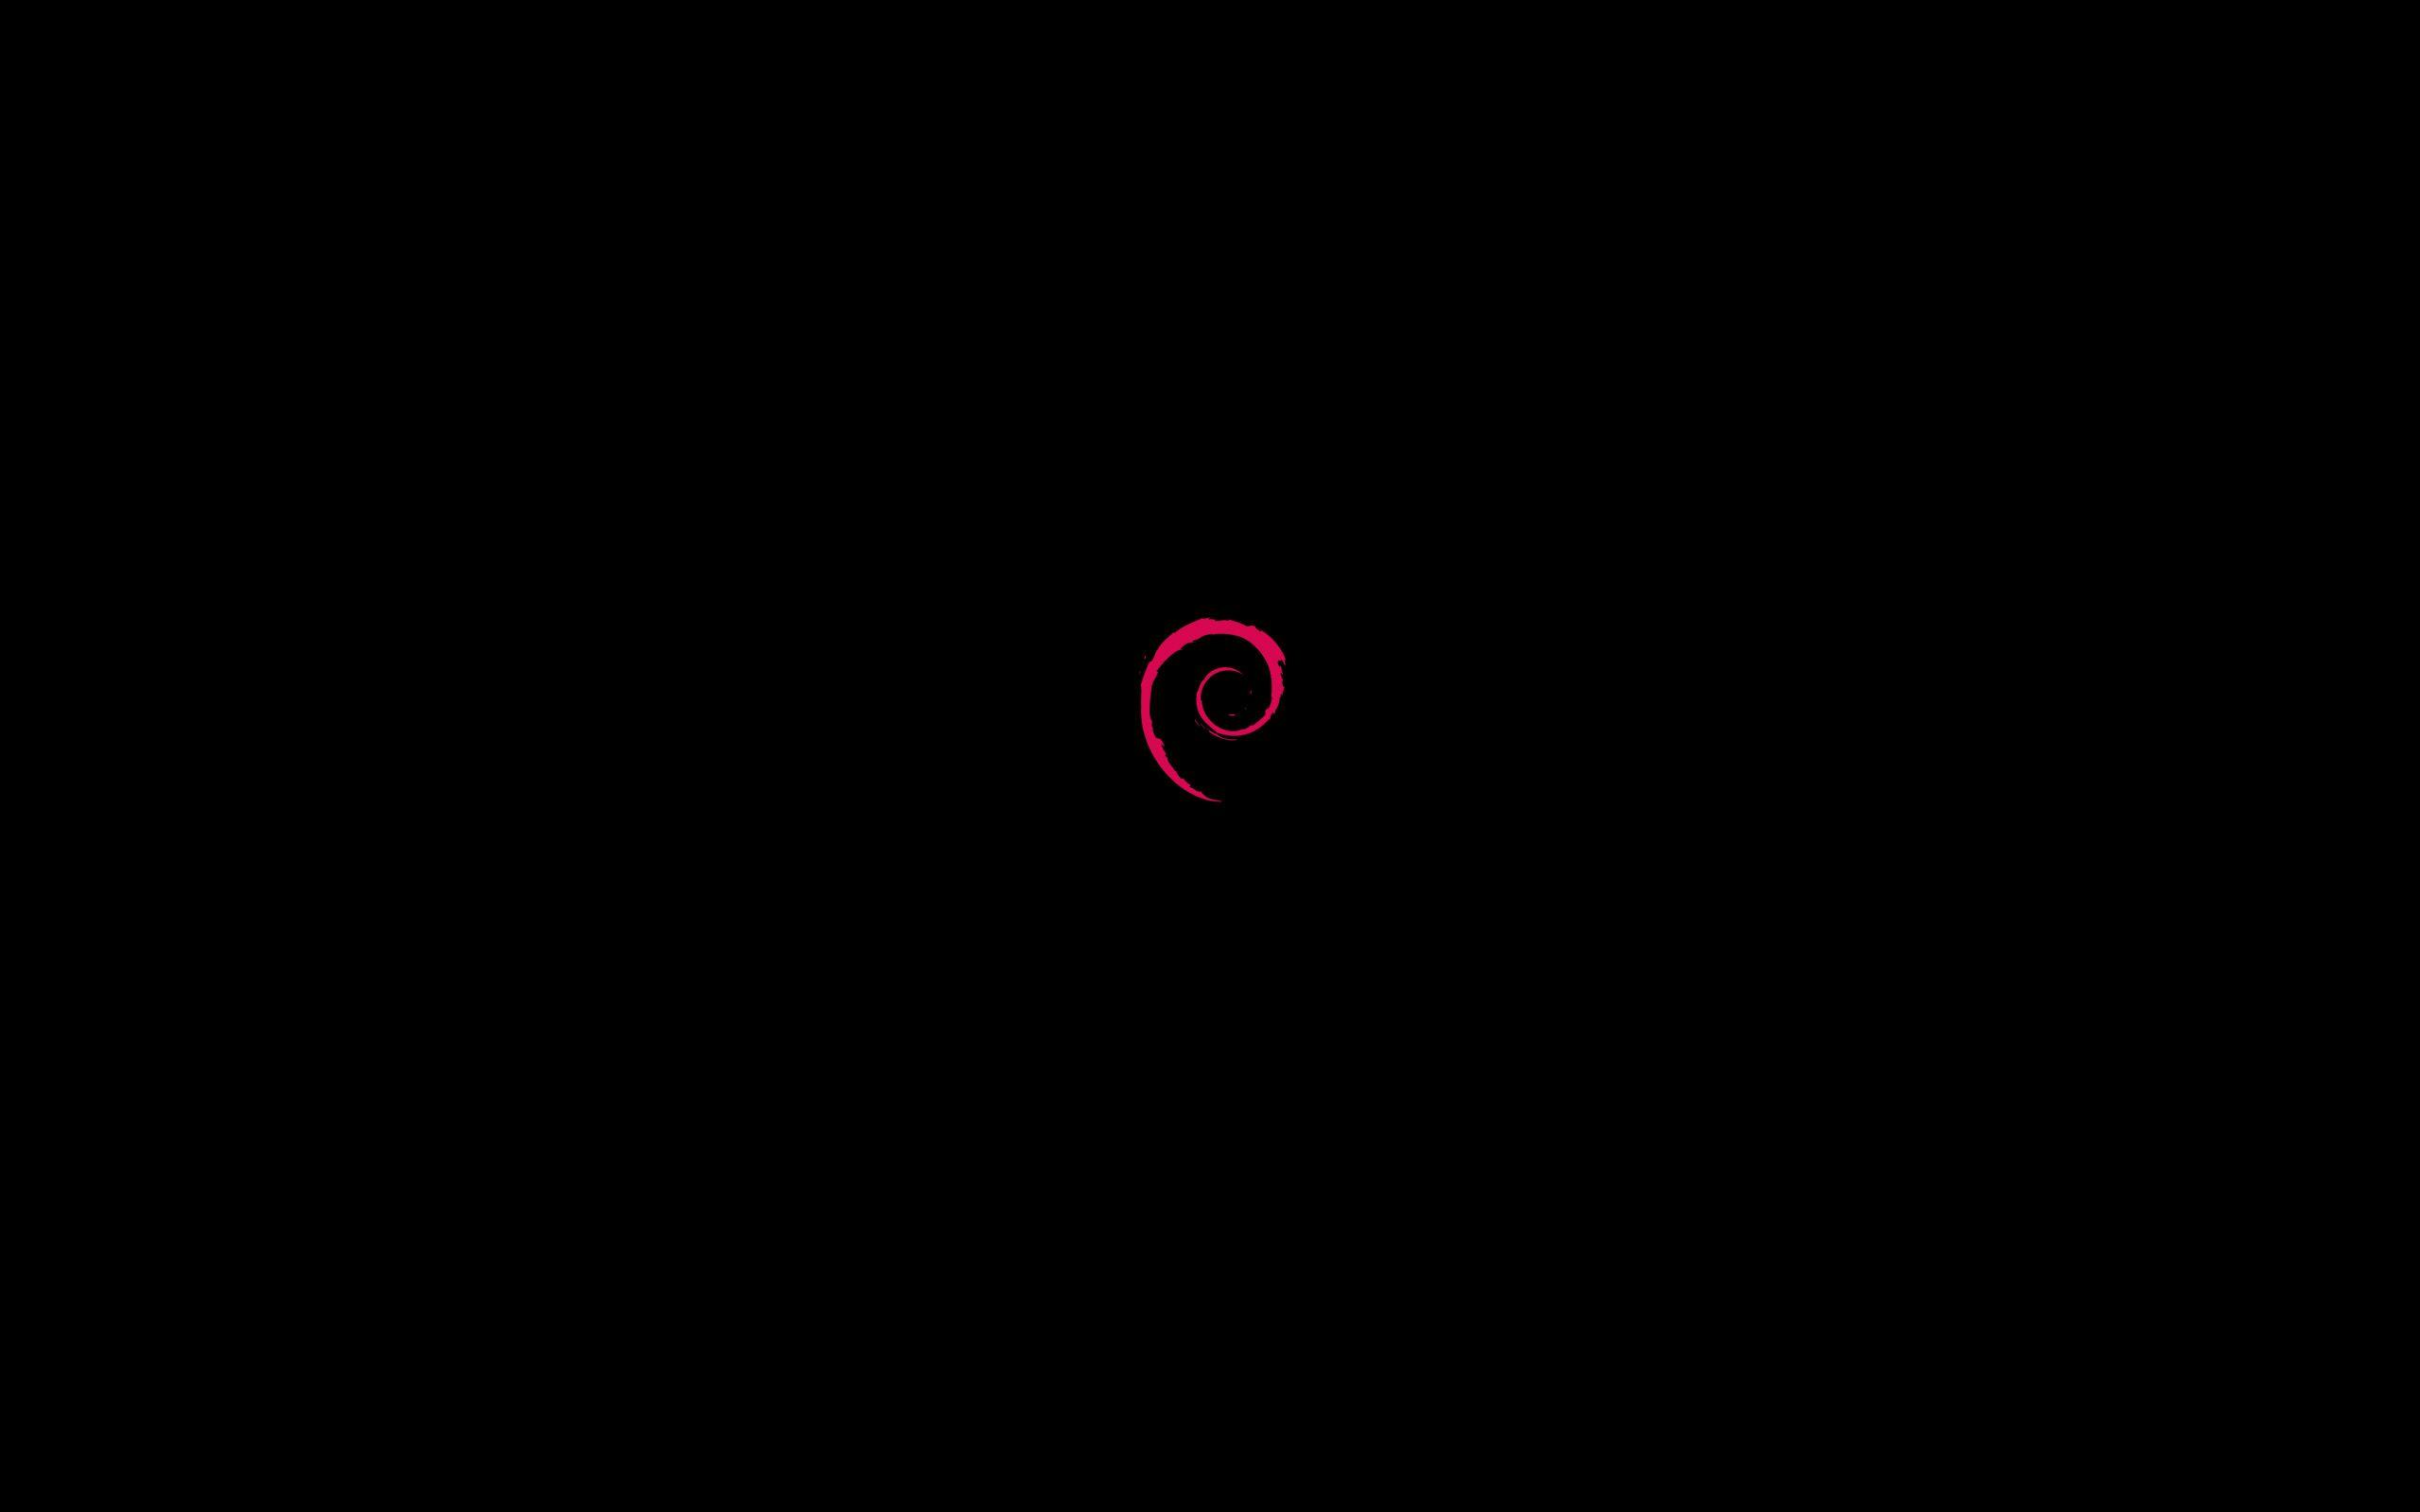 Debian Background 40686 2560x1600 px